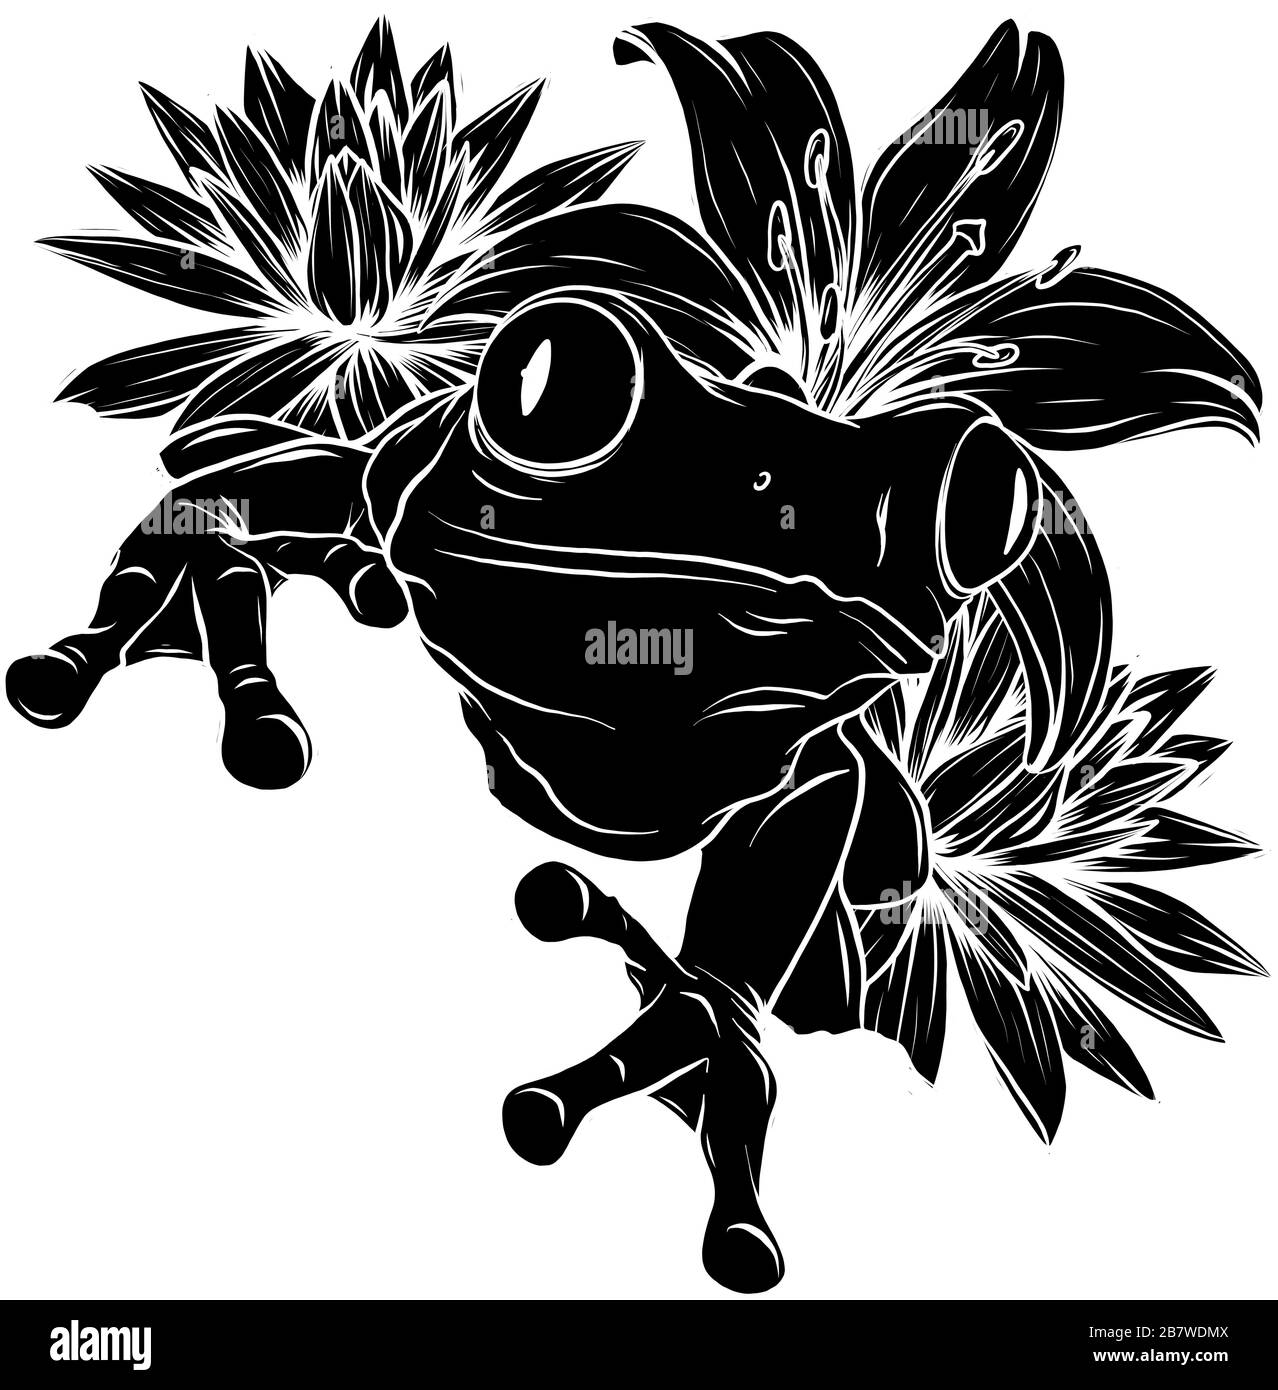 Silhouette de grenouille sur l'image d'illustration vectorielle de feuille Illustration de Vecteur